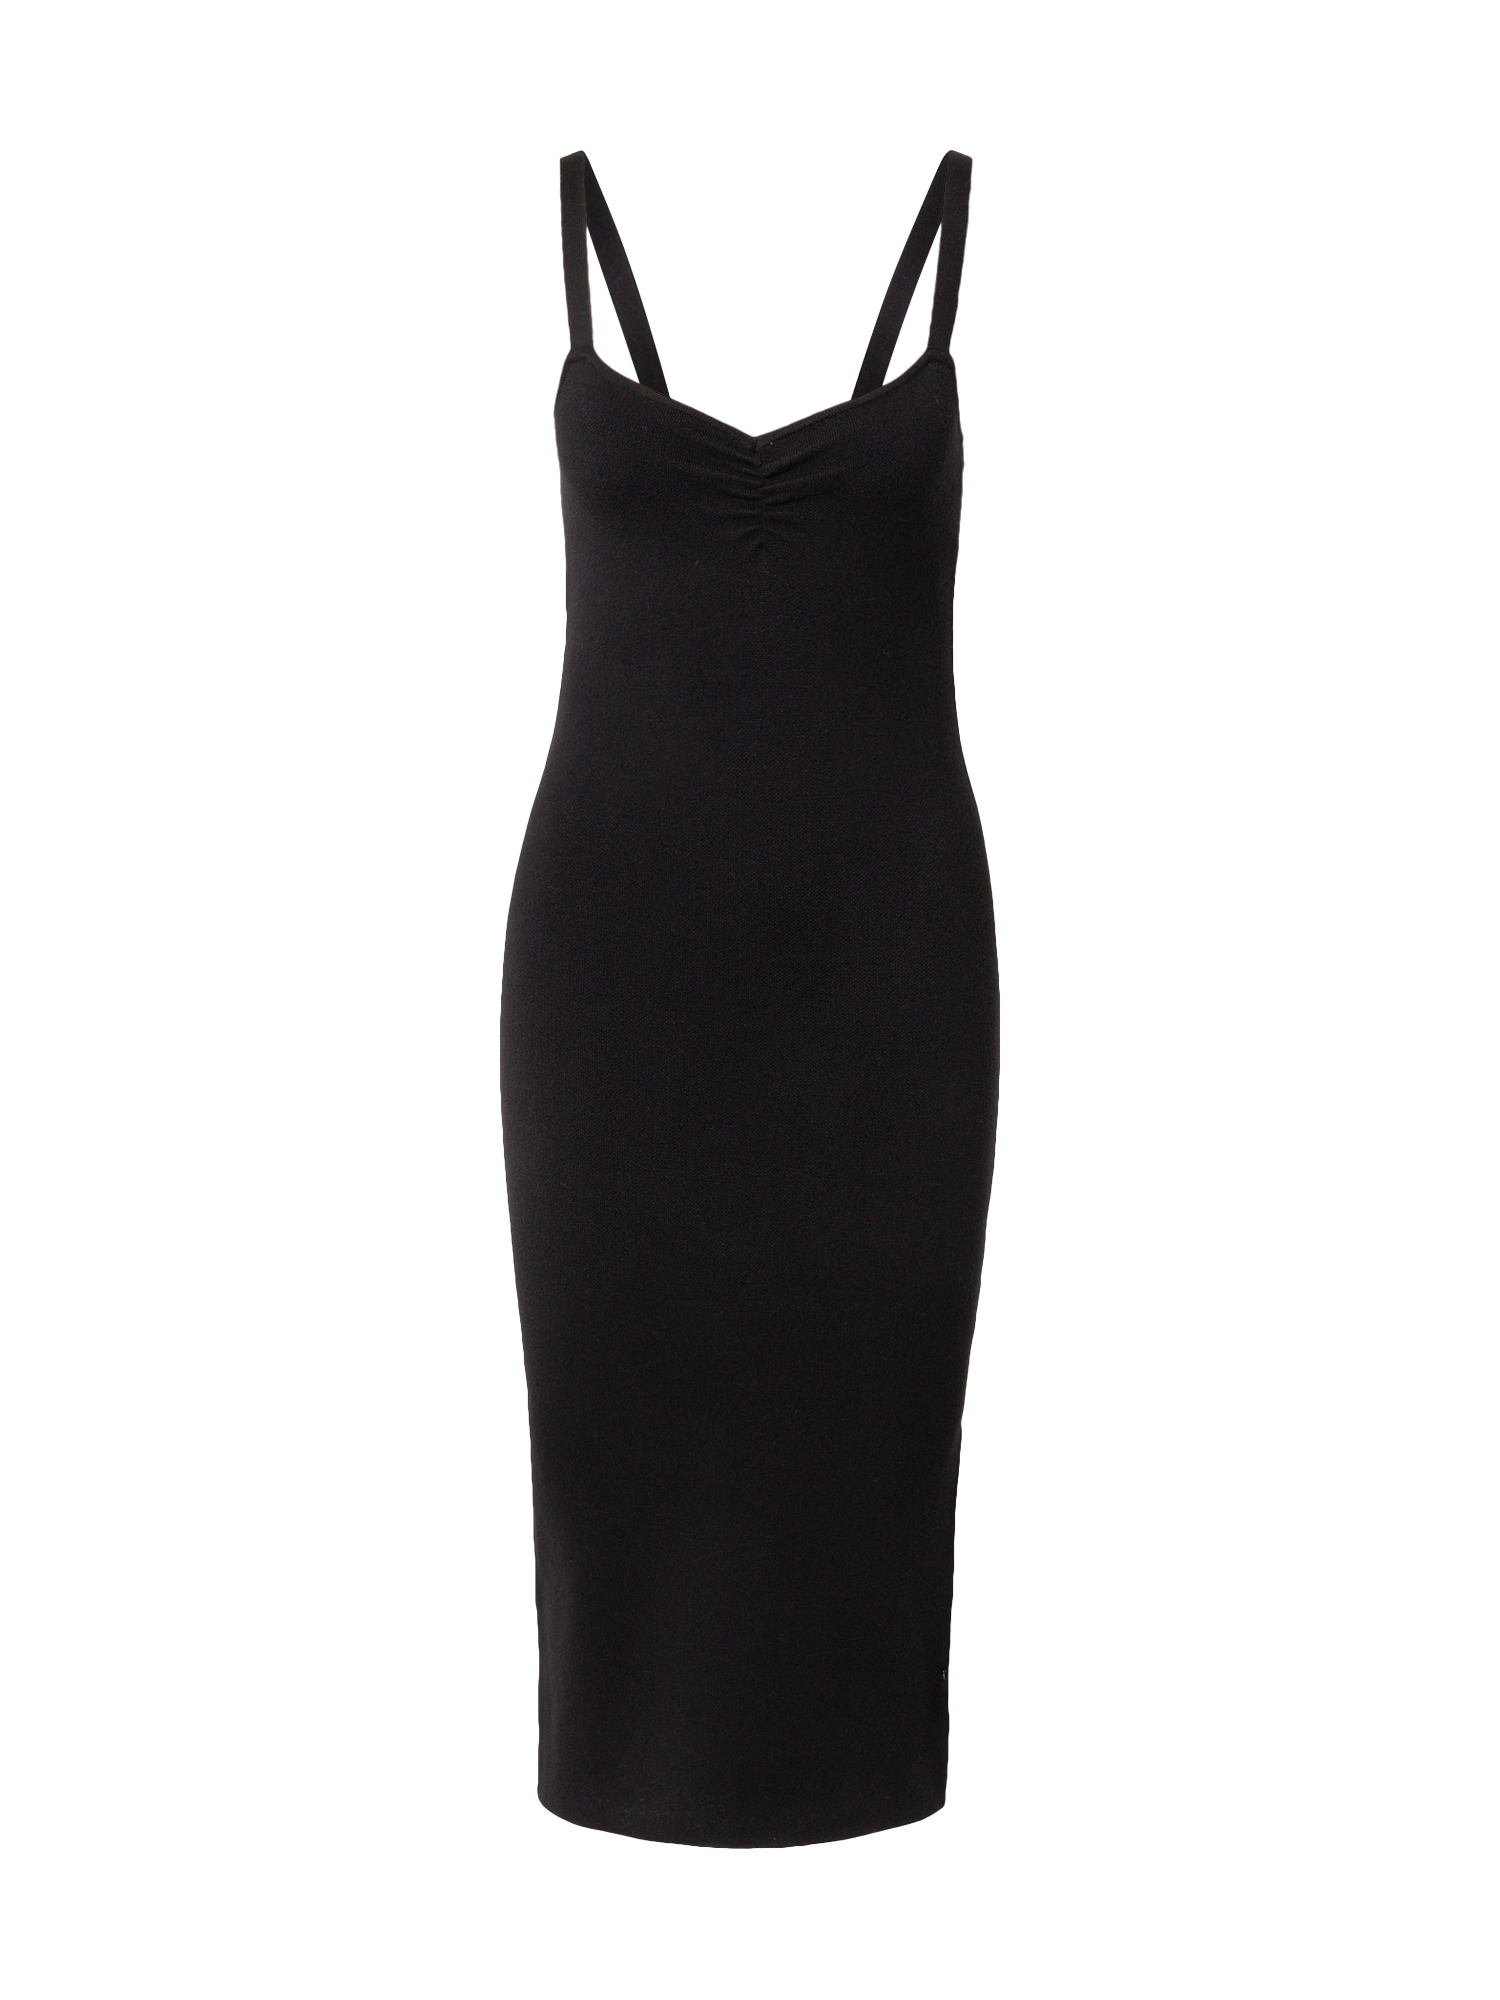 Kobiety Odzież Cotton On Sukienka ALYSSA w kolorze Czarnym 